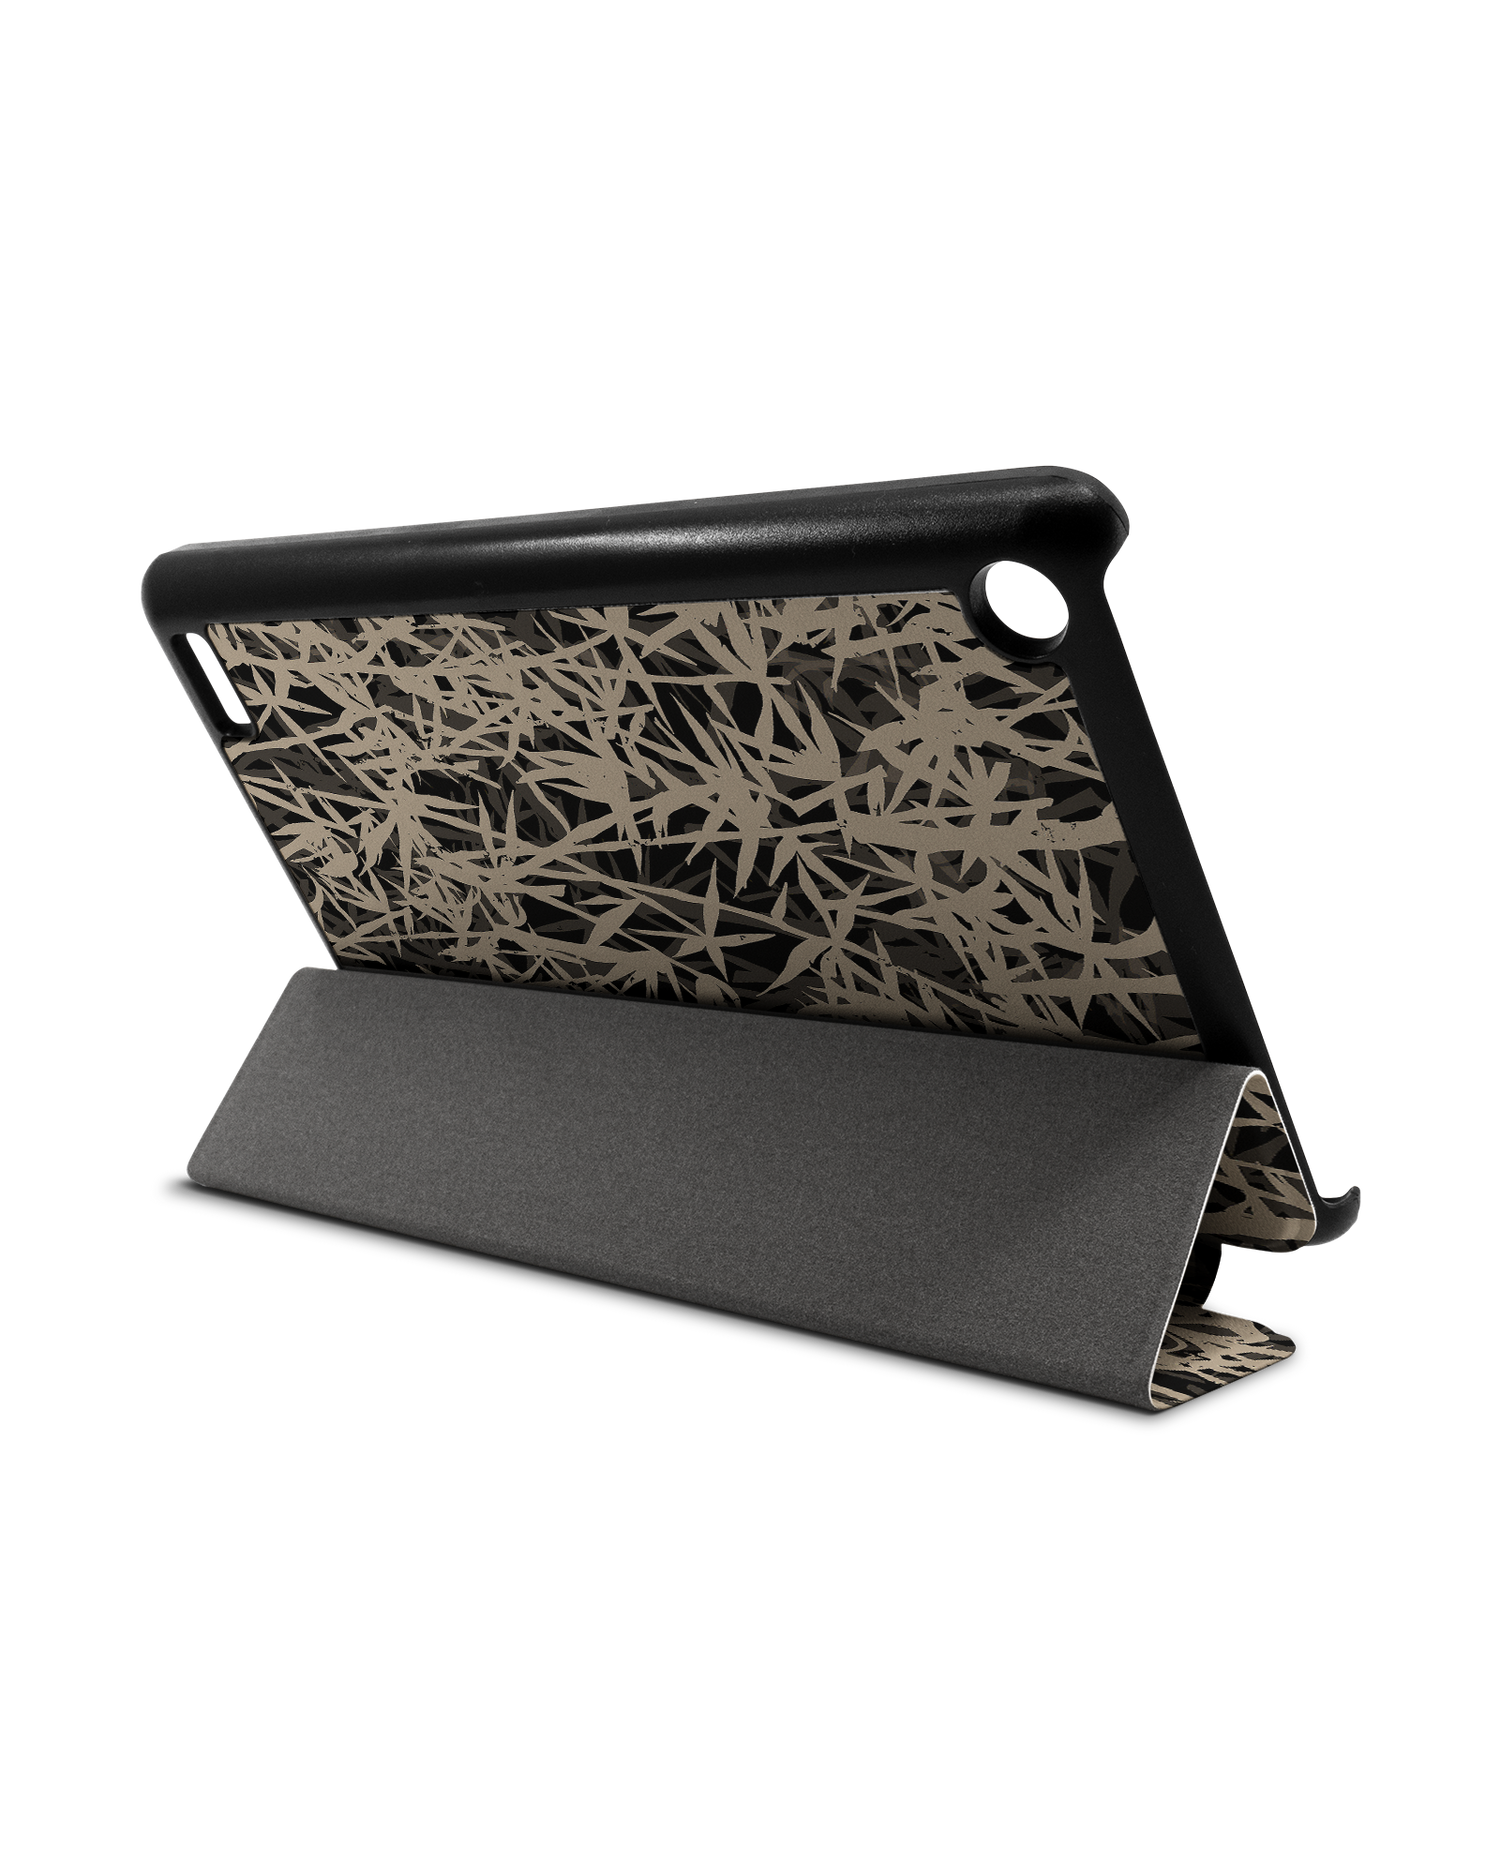 Bamboo Pattern Tablet Smart Case für Amazon Fire 7: Aufgestellt im Querformat